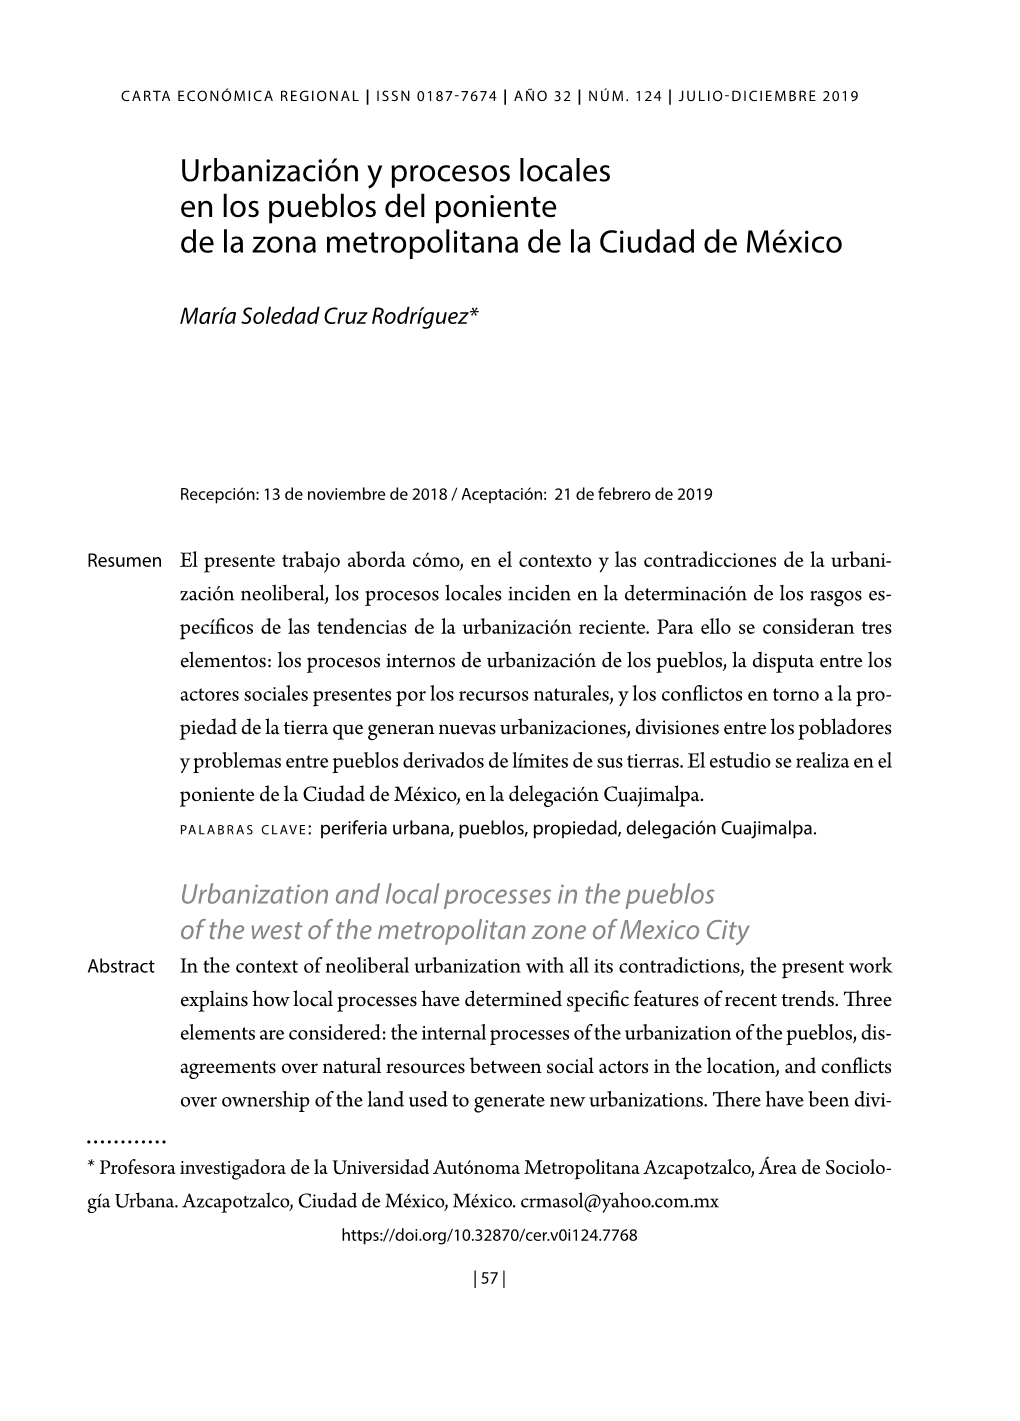 Urbanización Y Procesos Locales En Los Pueblos Del Poniente De La Zona Metropolitana De La Ciudad De México